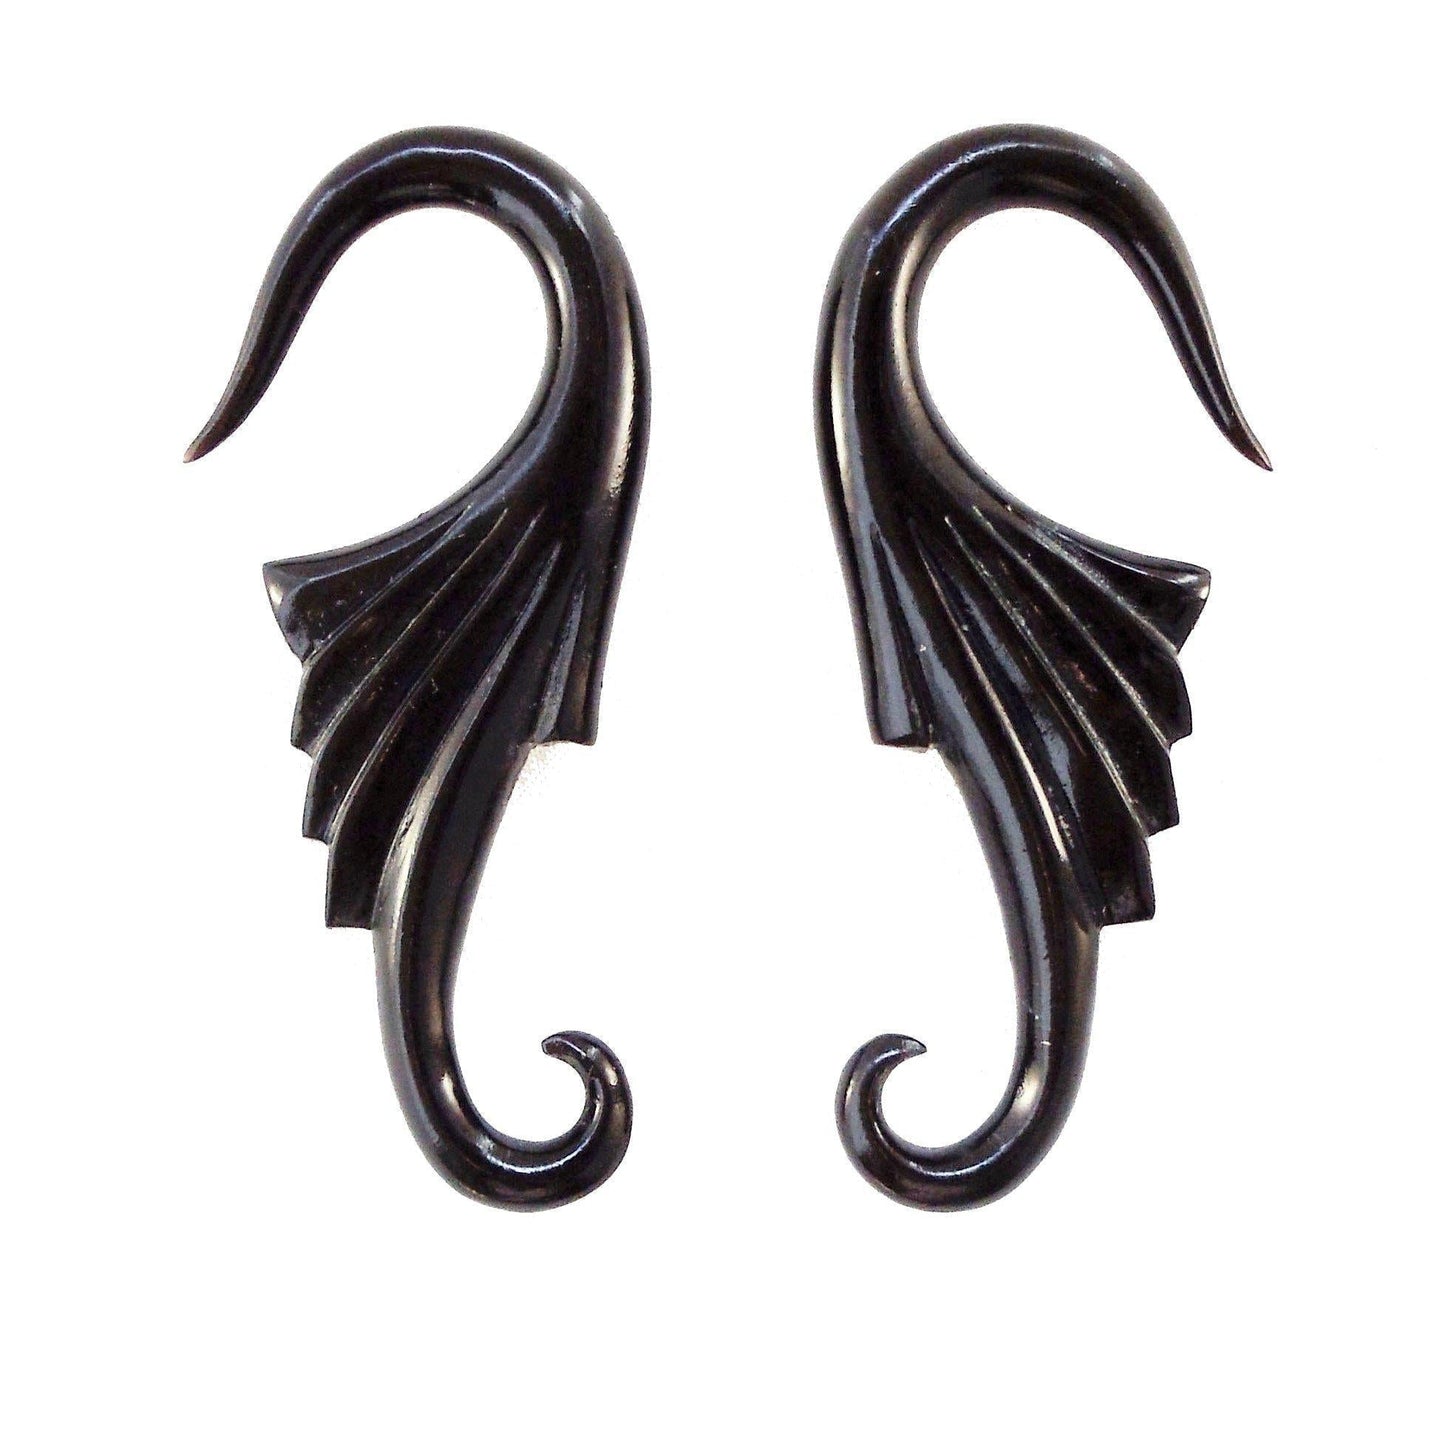 Gauge Earrings :|: Wings. Horn 6g gauge earrings.